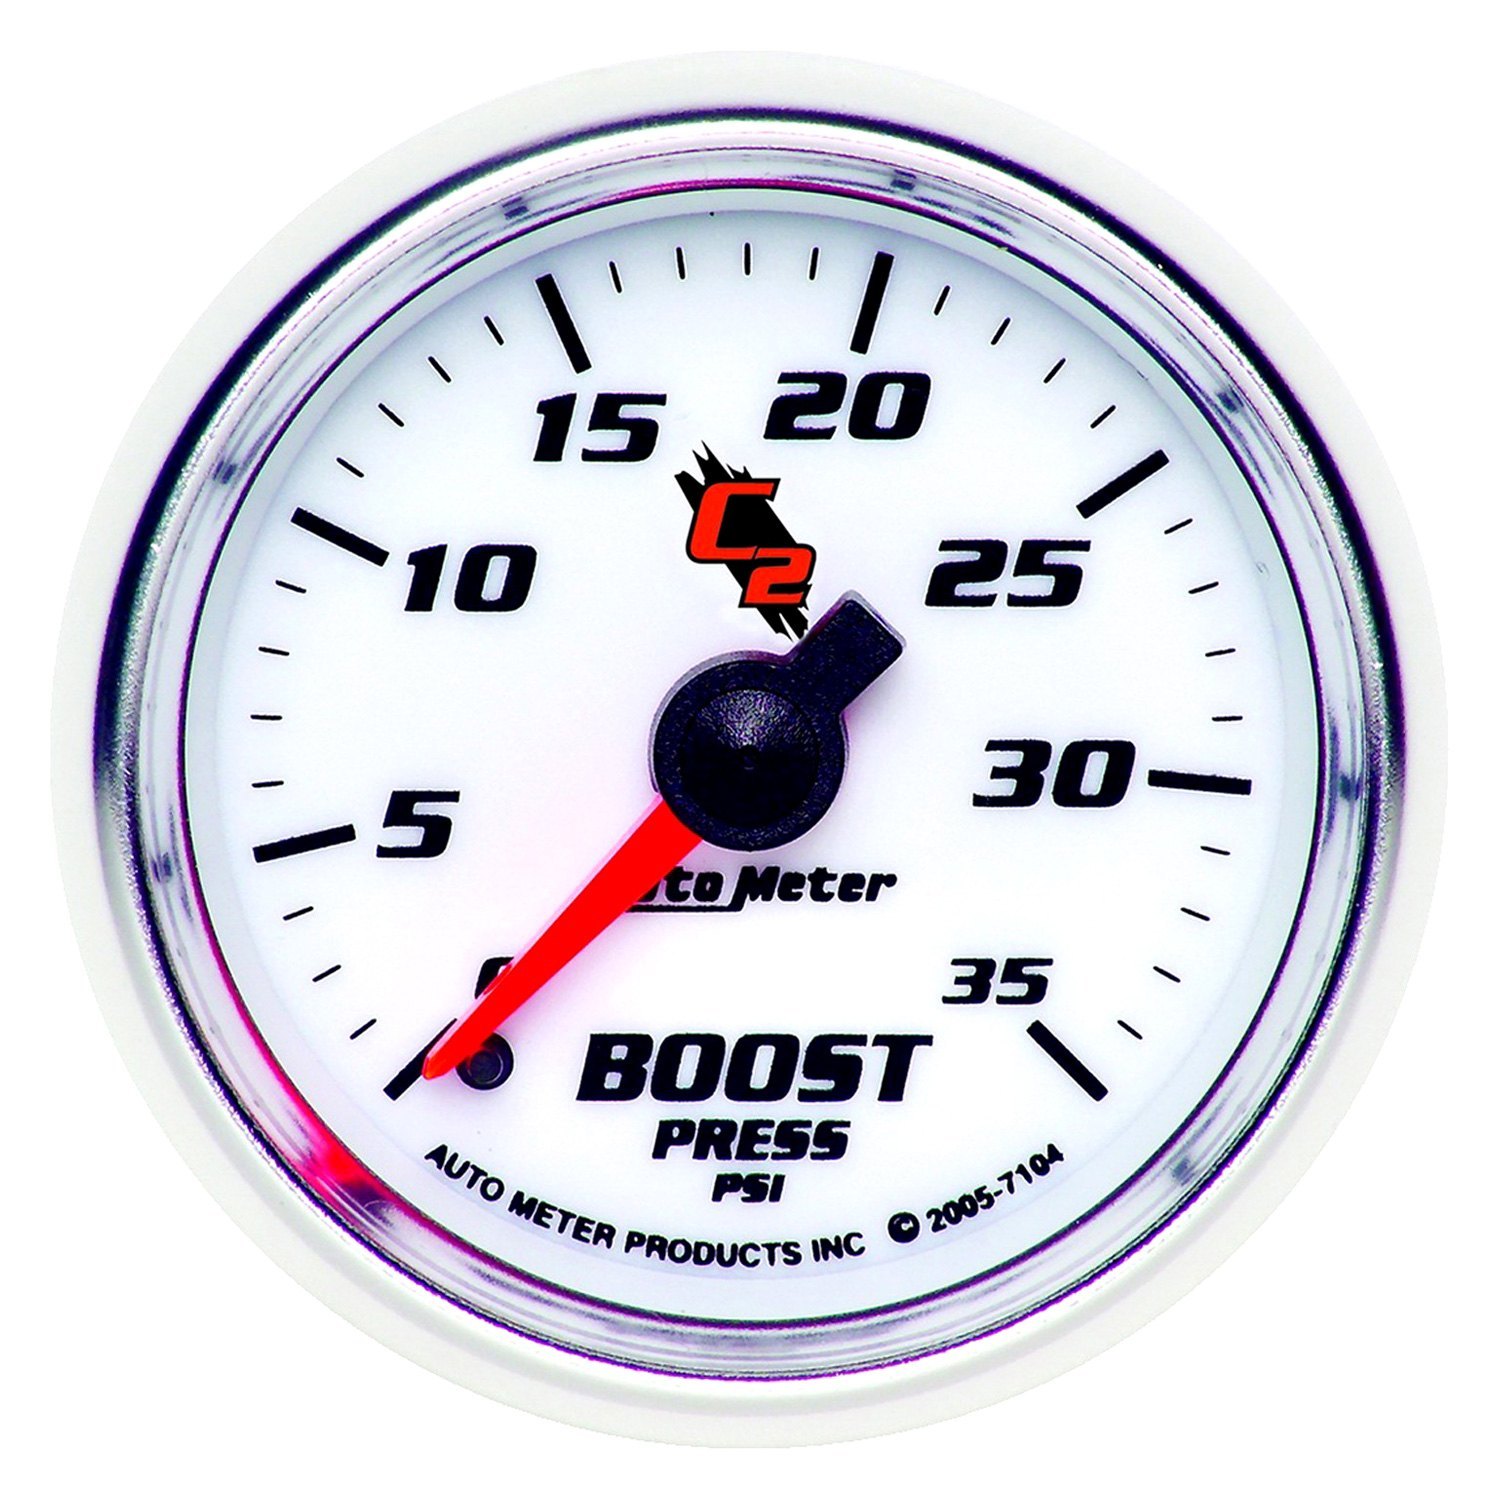 35 psi. Gauge указатель наддува. Указатель уровня топлива механический. Указатель давления Boost. Измерительные приборы для грузовых автомобиля.